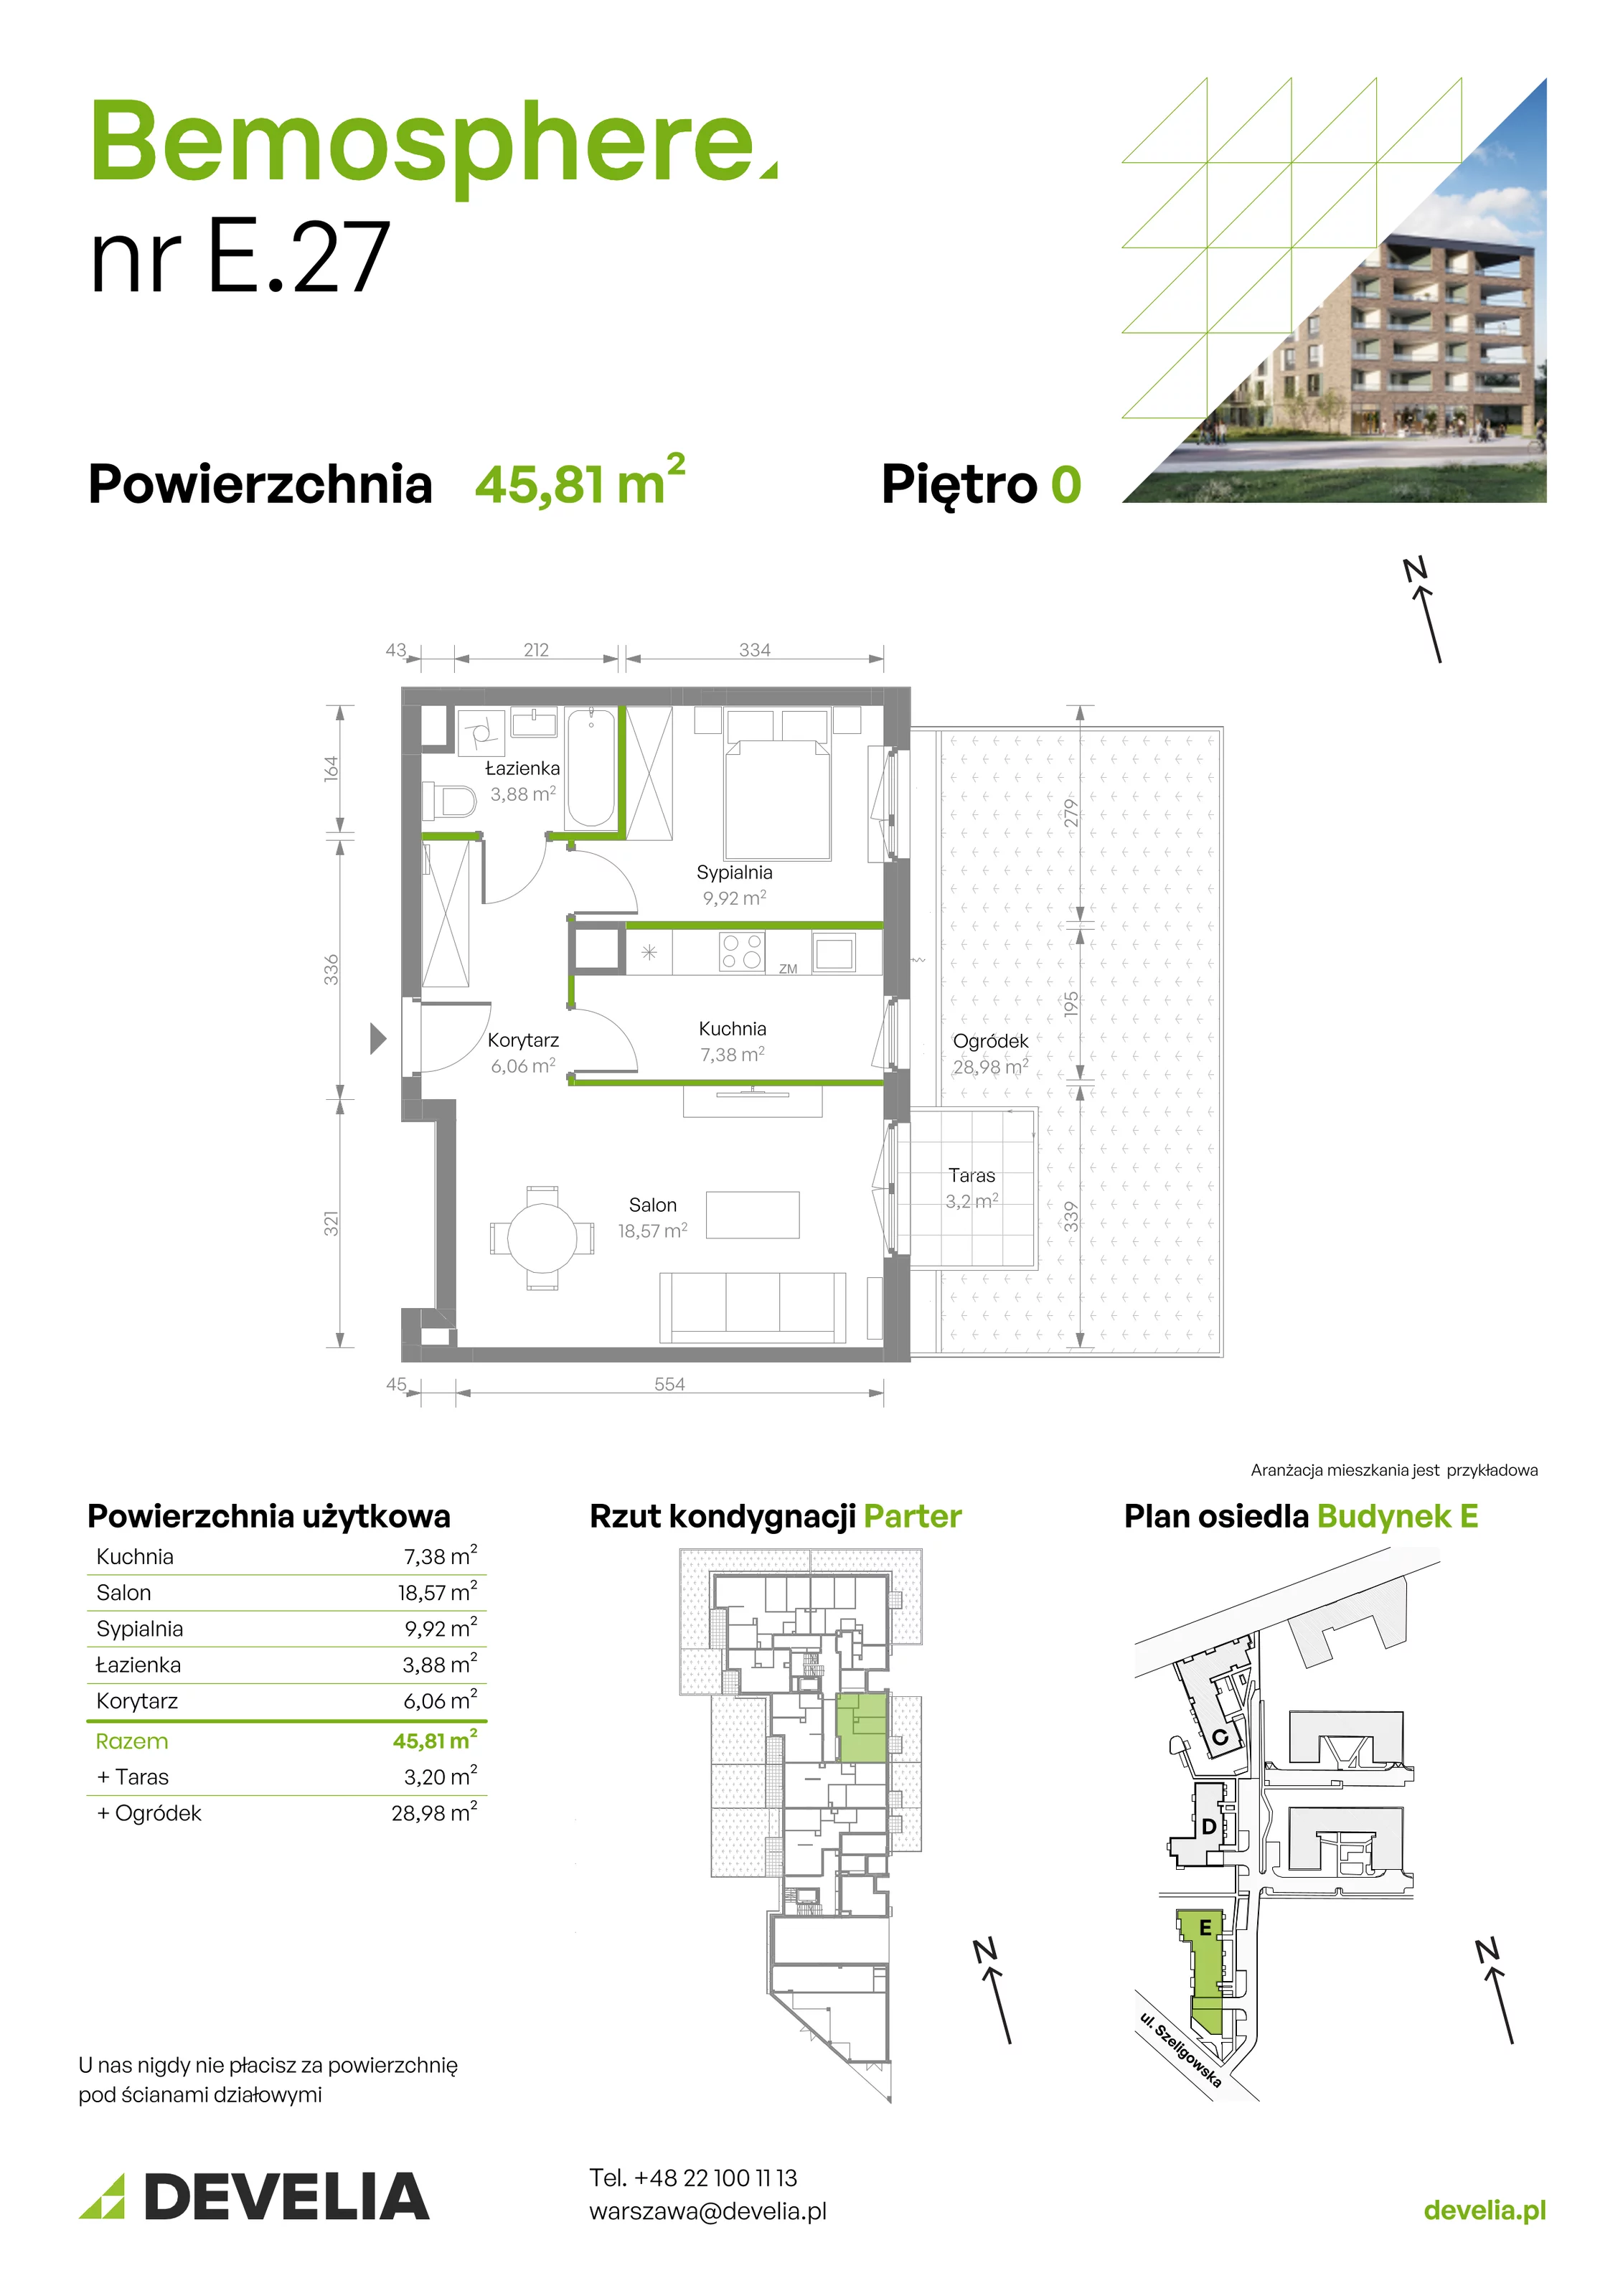 Mieszkanie 45,81 m², parter, oferta nr E/027, Bemosphere, Warszawa, Bemowo, Chrzanów, ul. Szeligowska 24